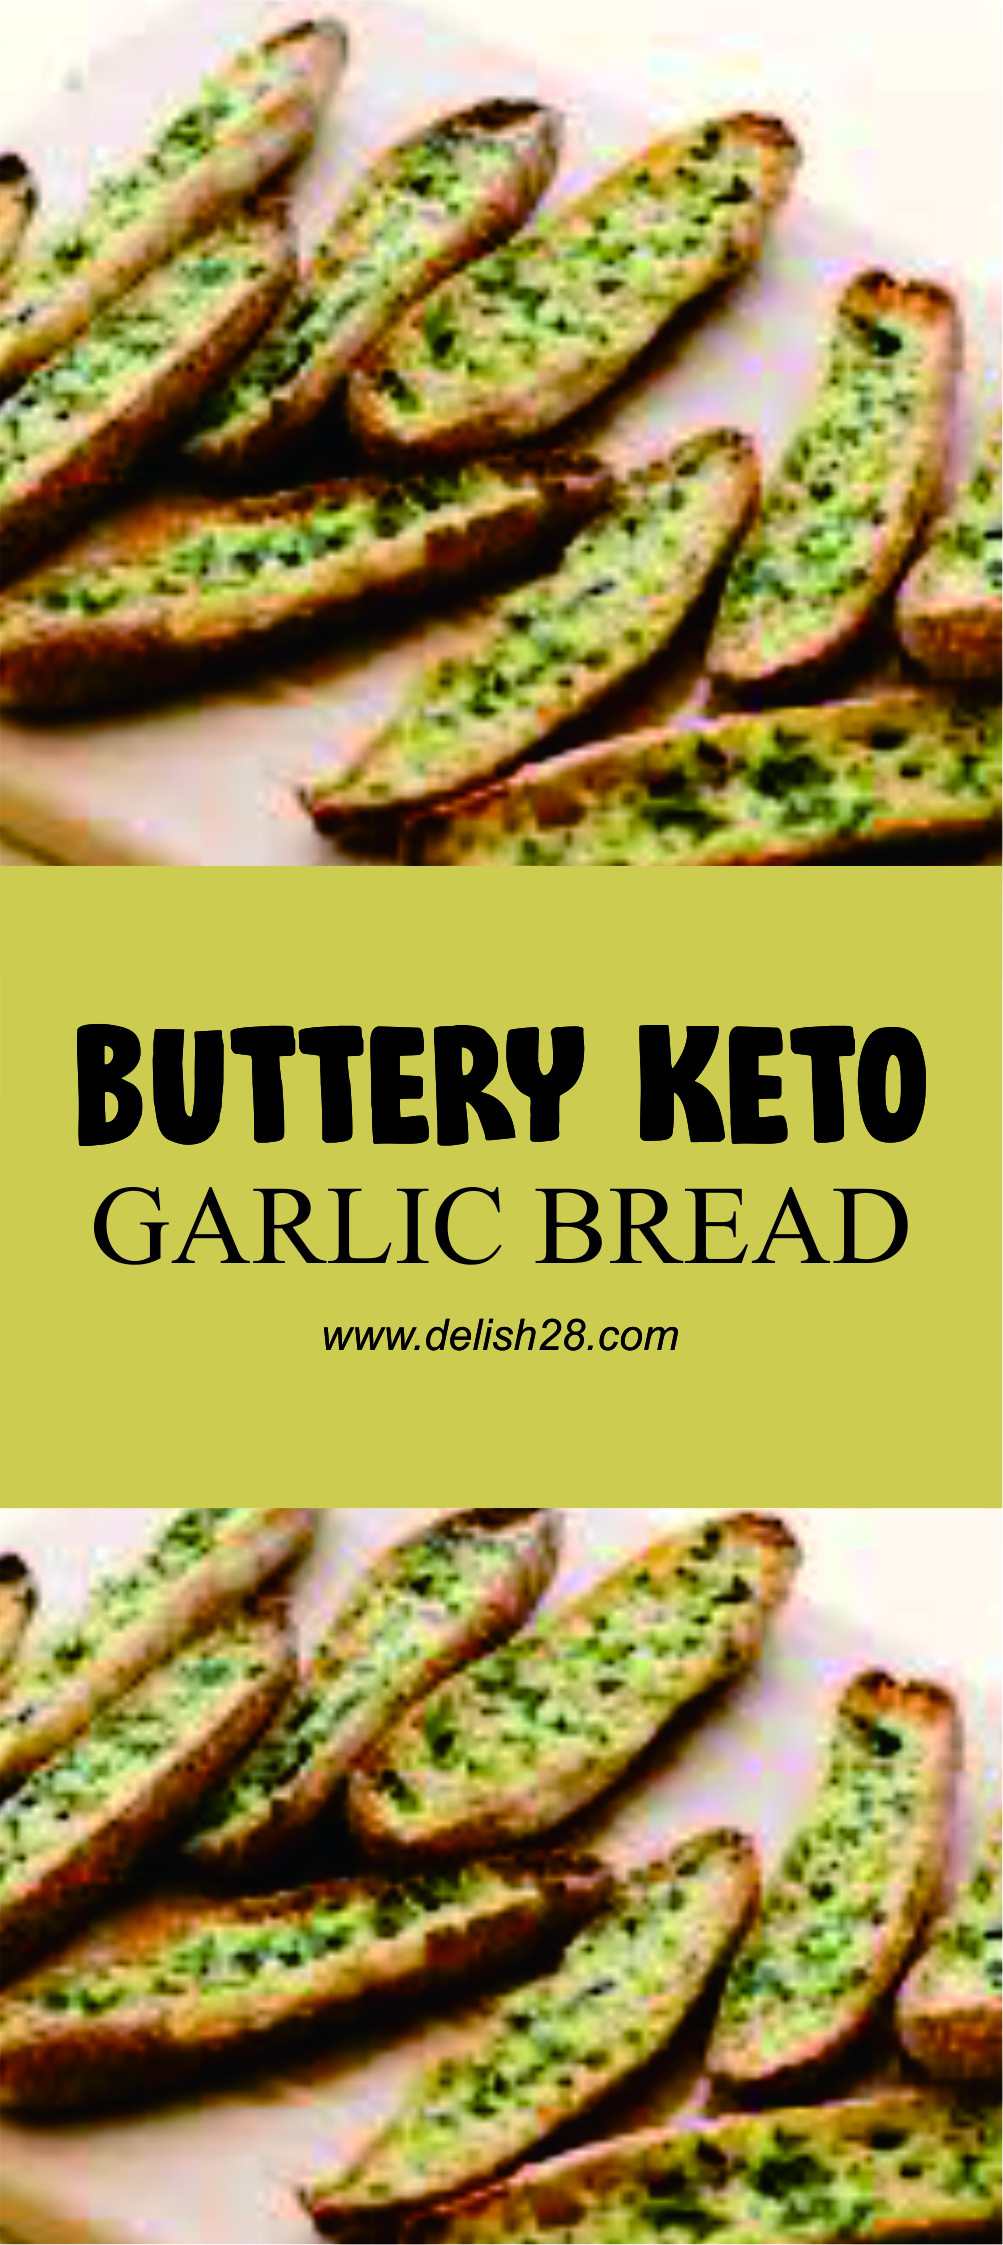 3 Ingredient Keto Garlic Bread BUTTERY KETO GARLIC BREAD delish28